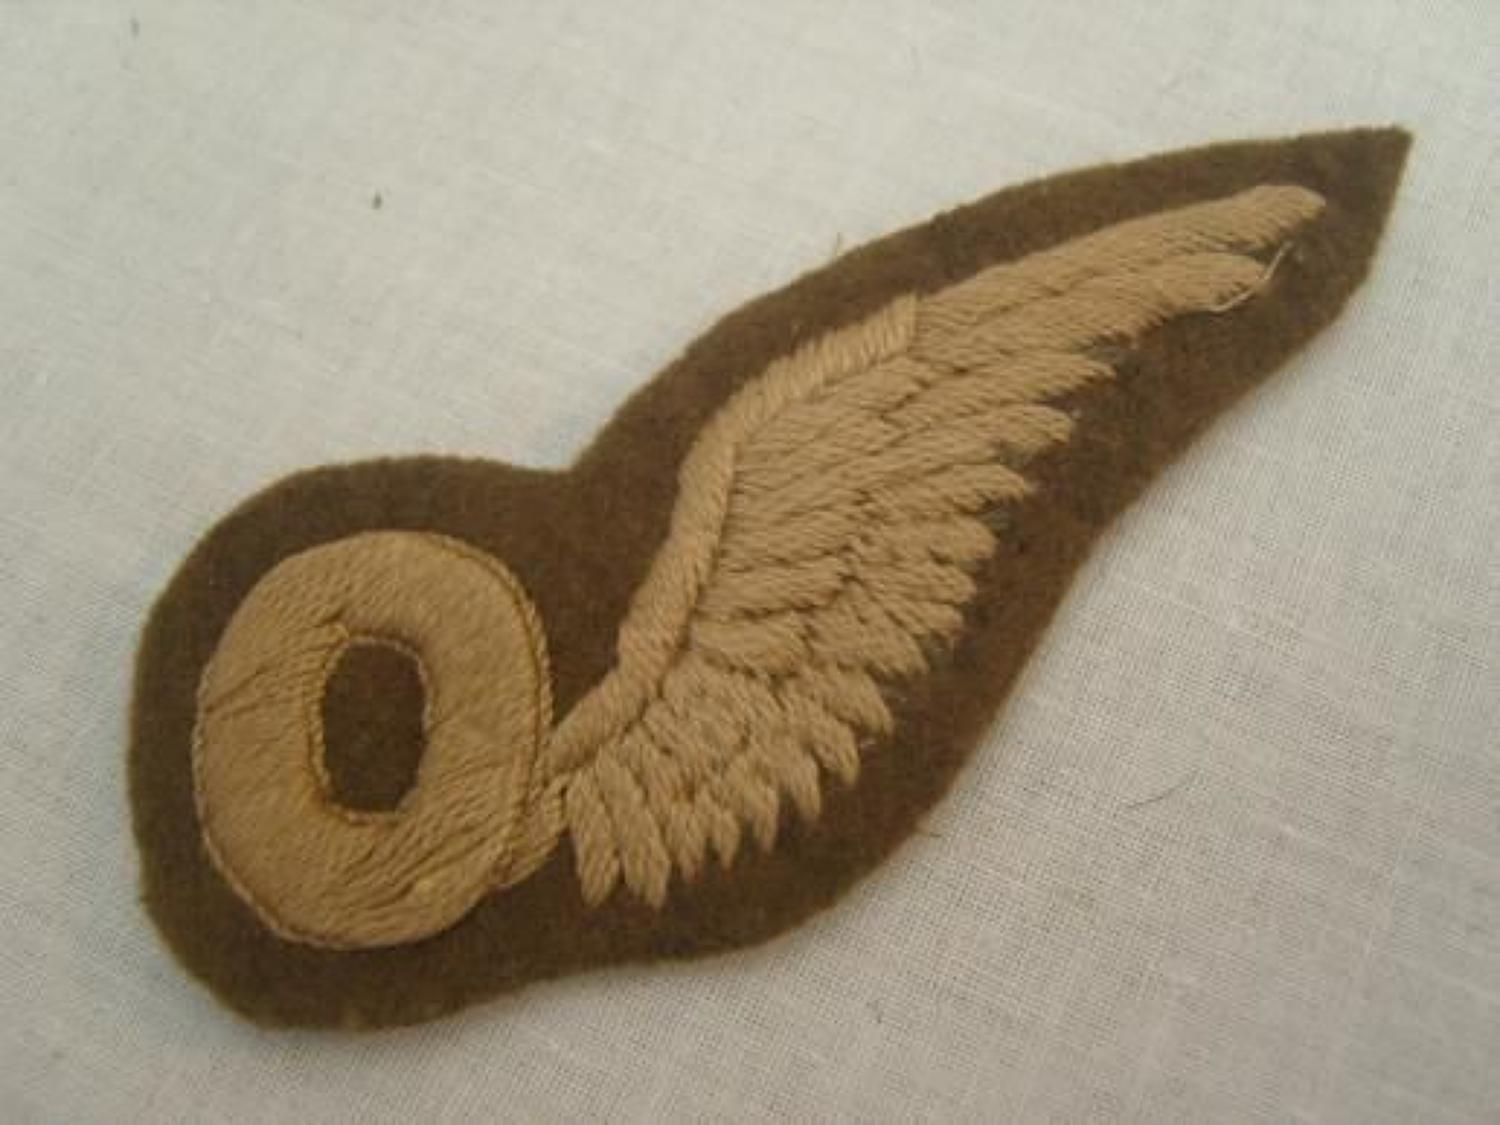 WW1 British RFC Observers half wing badge.